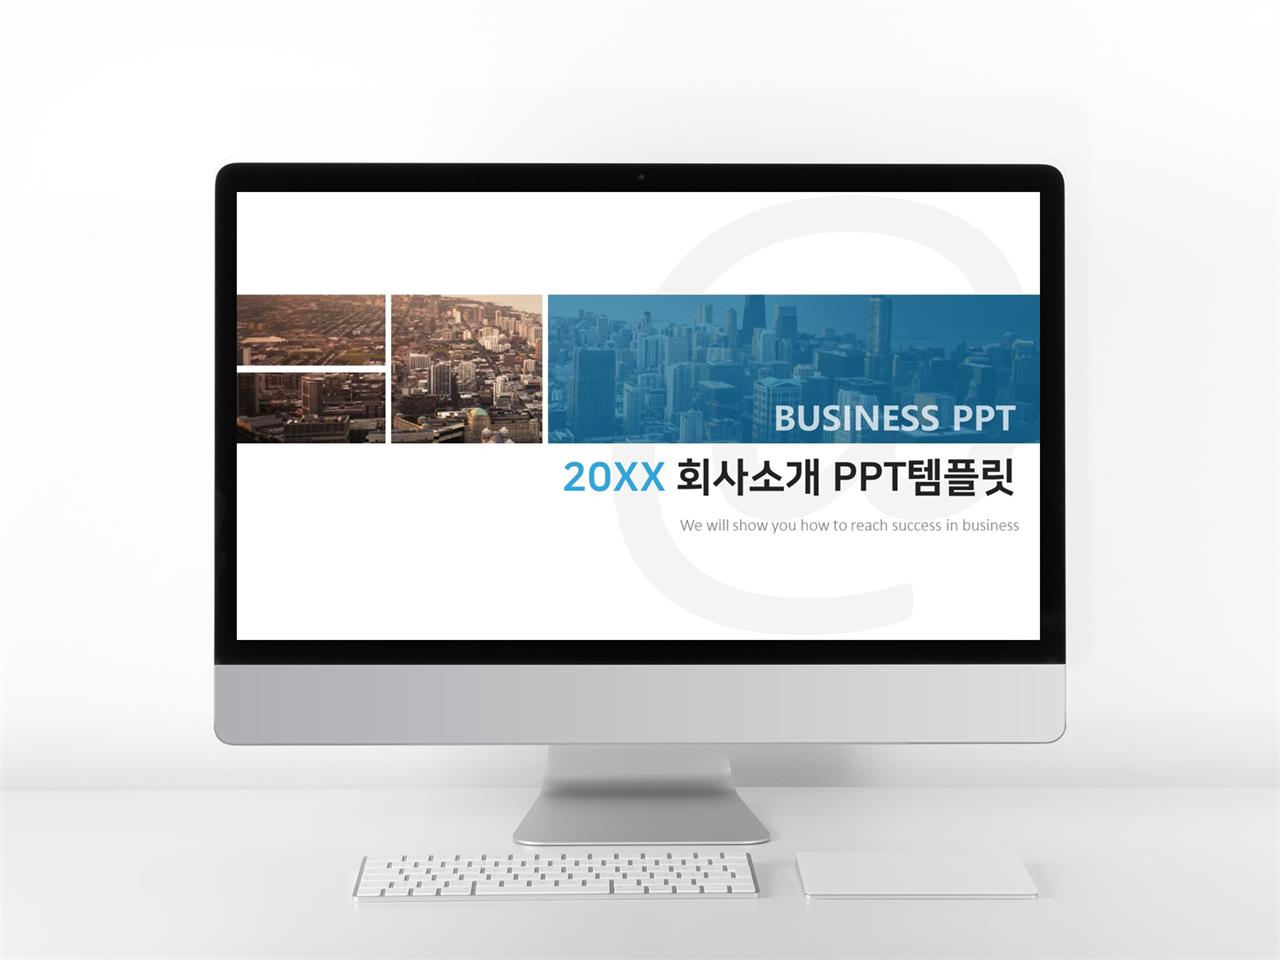 기업소개 파란색 스타일 나는 고퀄리티 파워포인트탬플릿 제작 미리보기